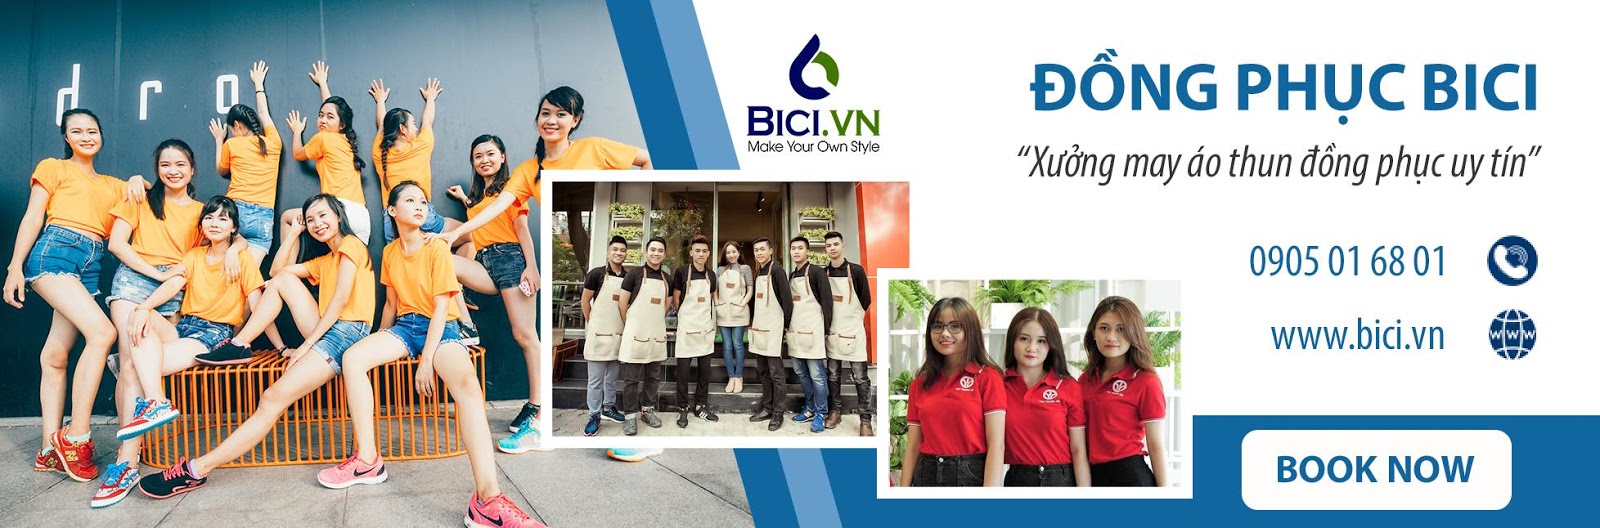 BiCi - Công ty may đồng phục tại Đà Nẵng